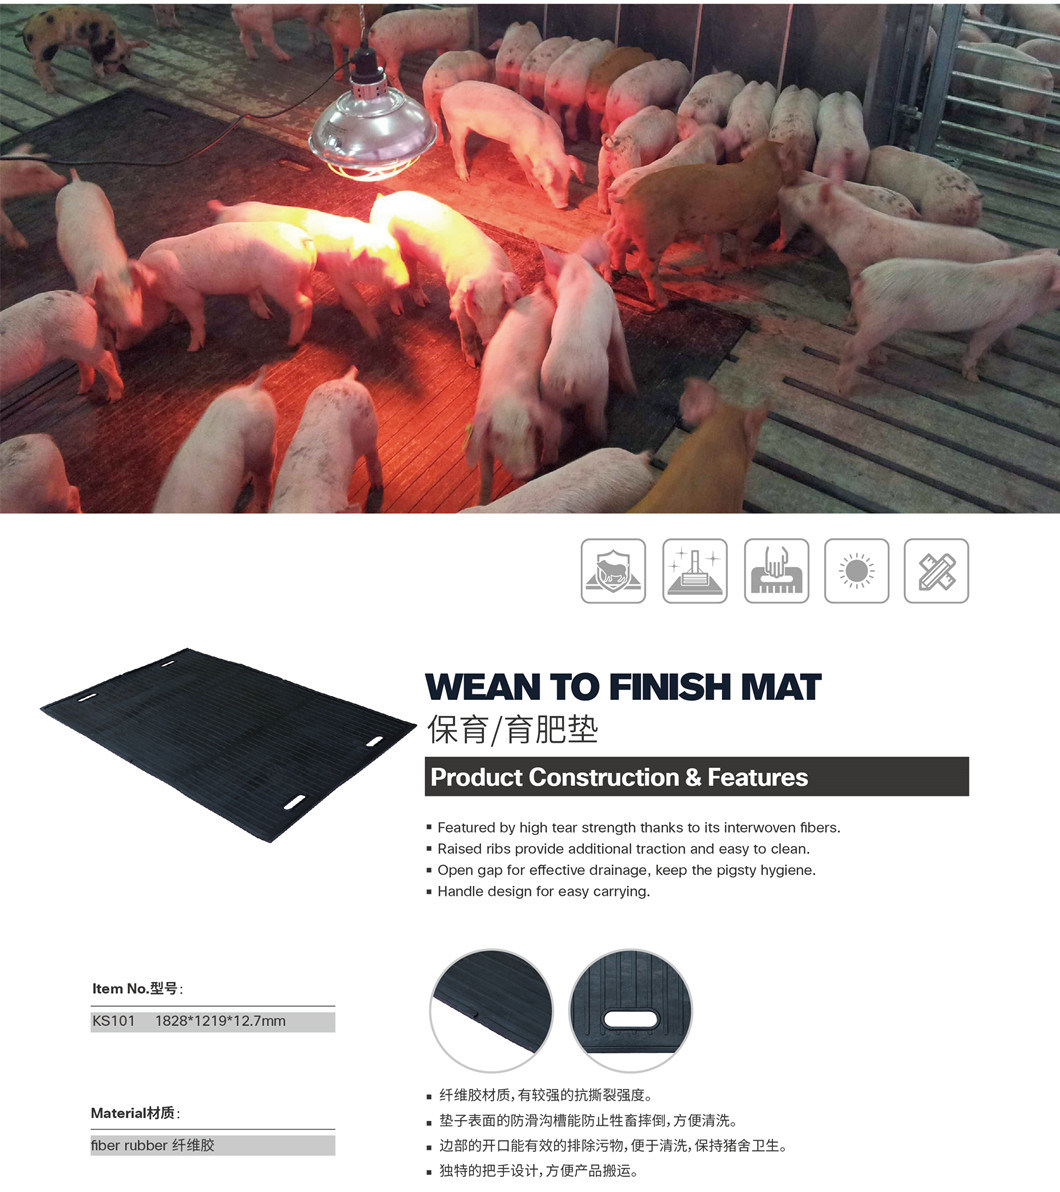 12mm Thick Durable Pig Rubber Mat Wean to Finish Mat Manger Mat